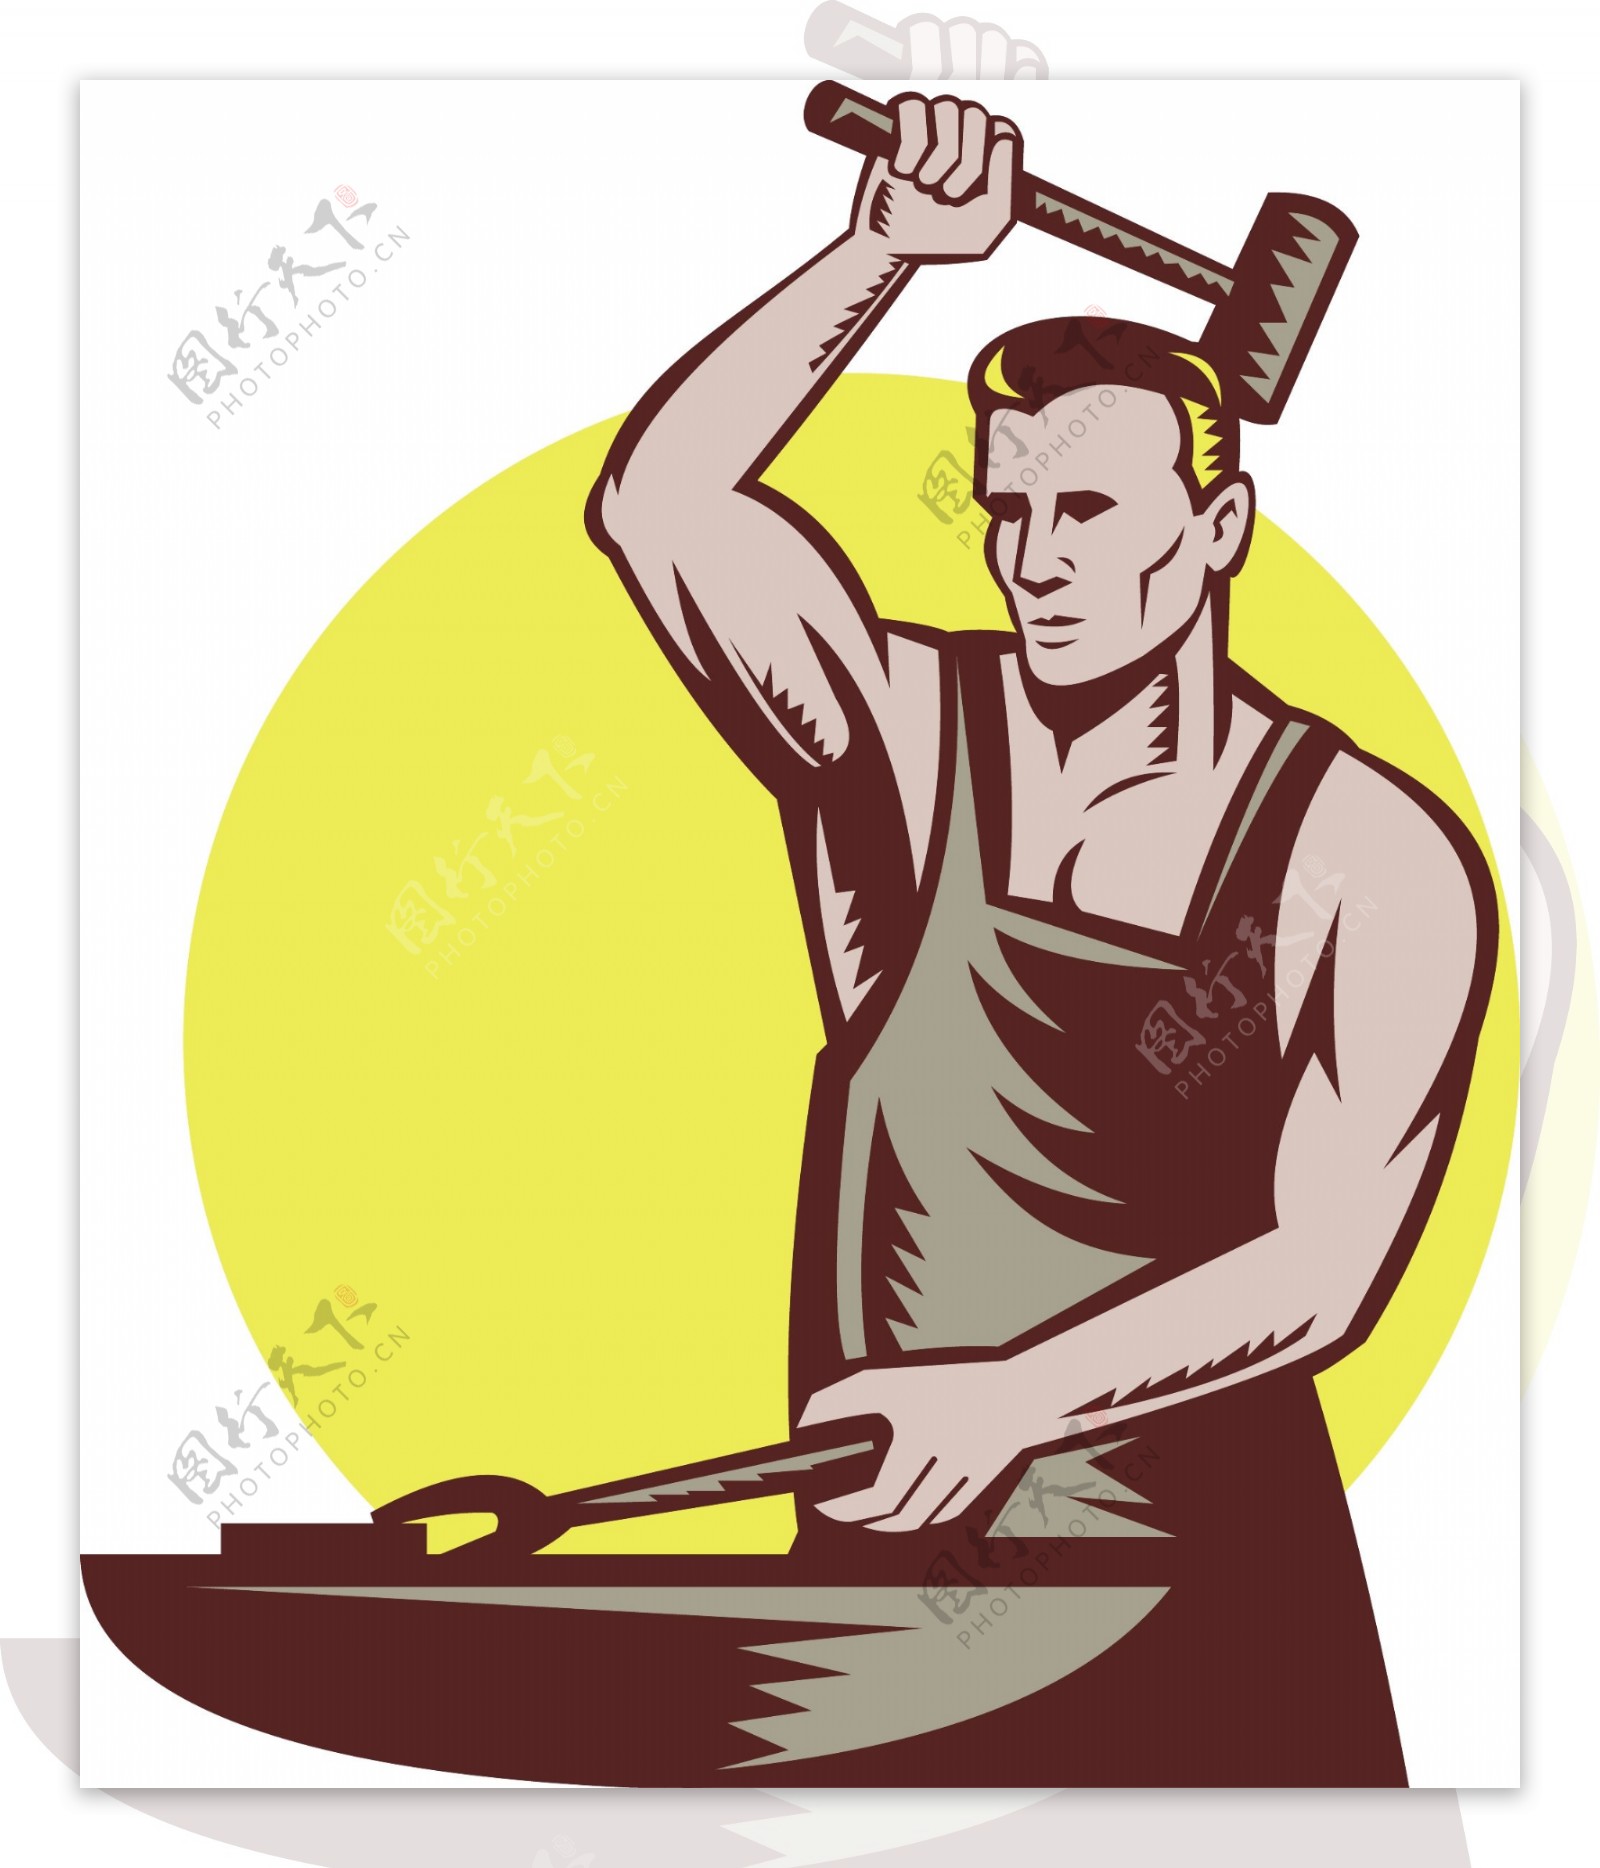 铁匠工人用锤子和铁砧